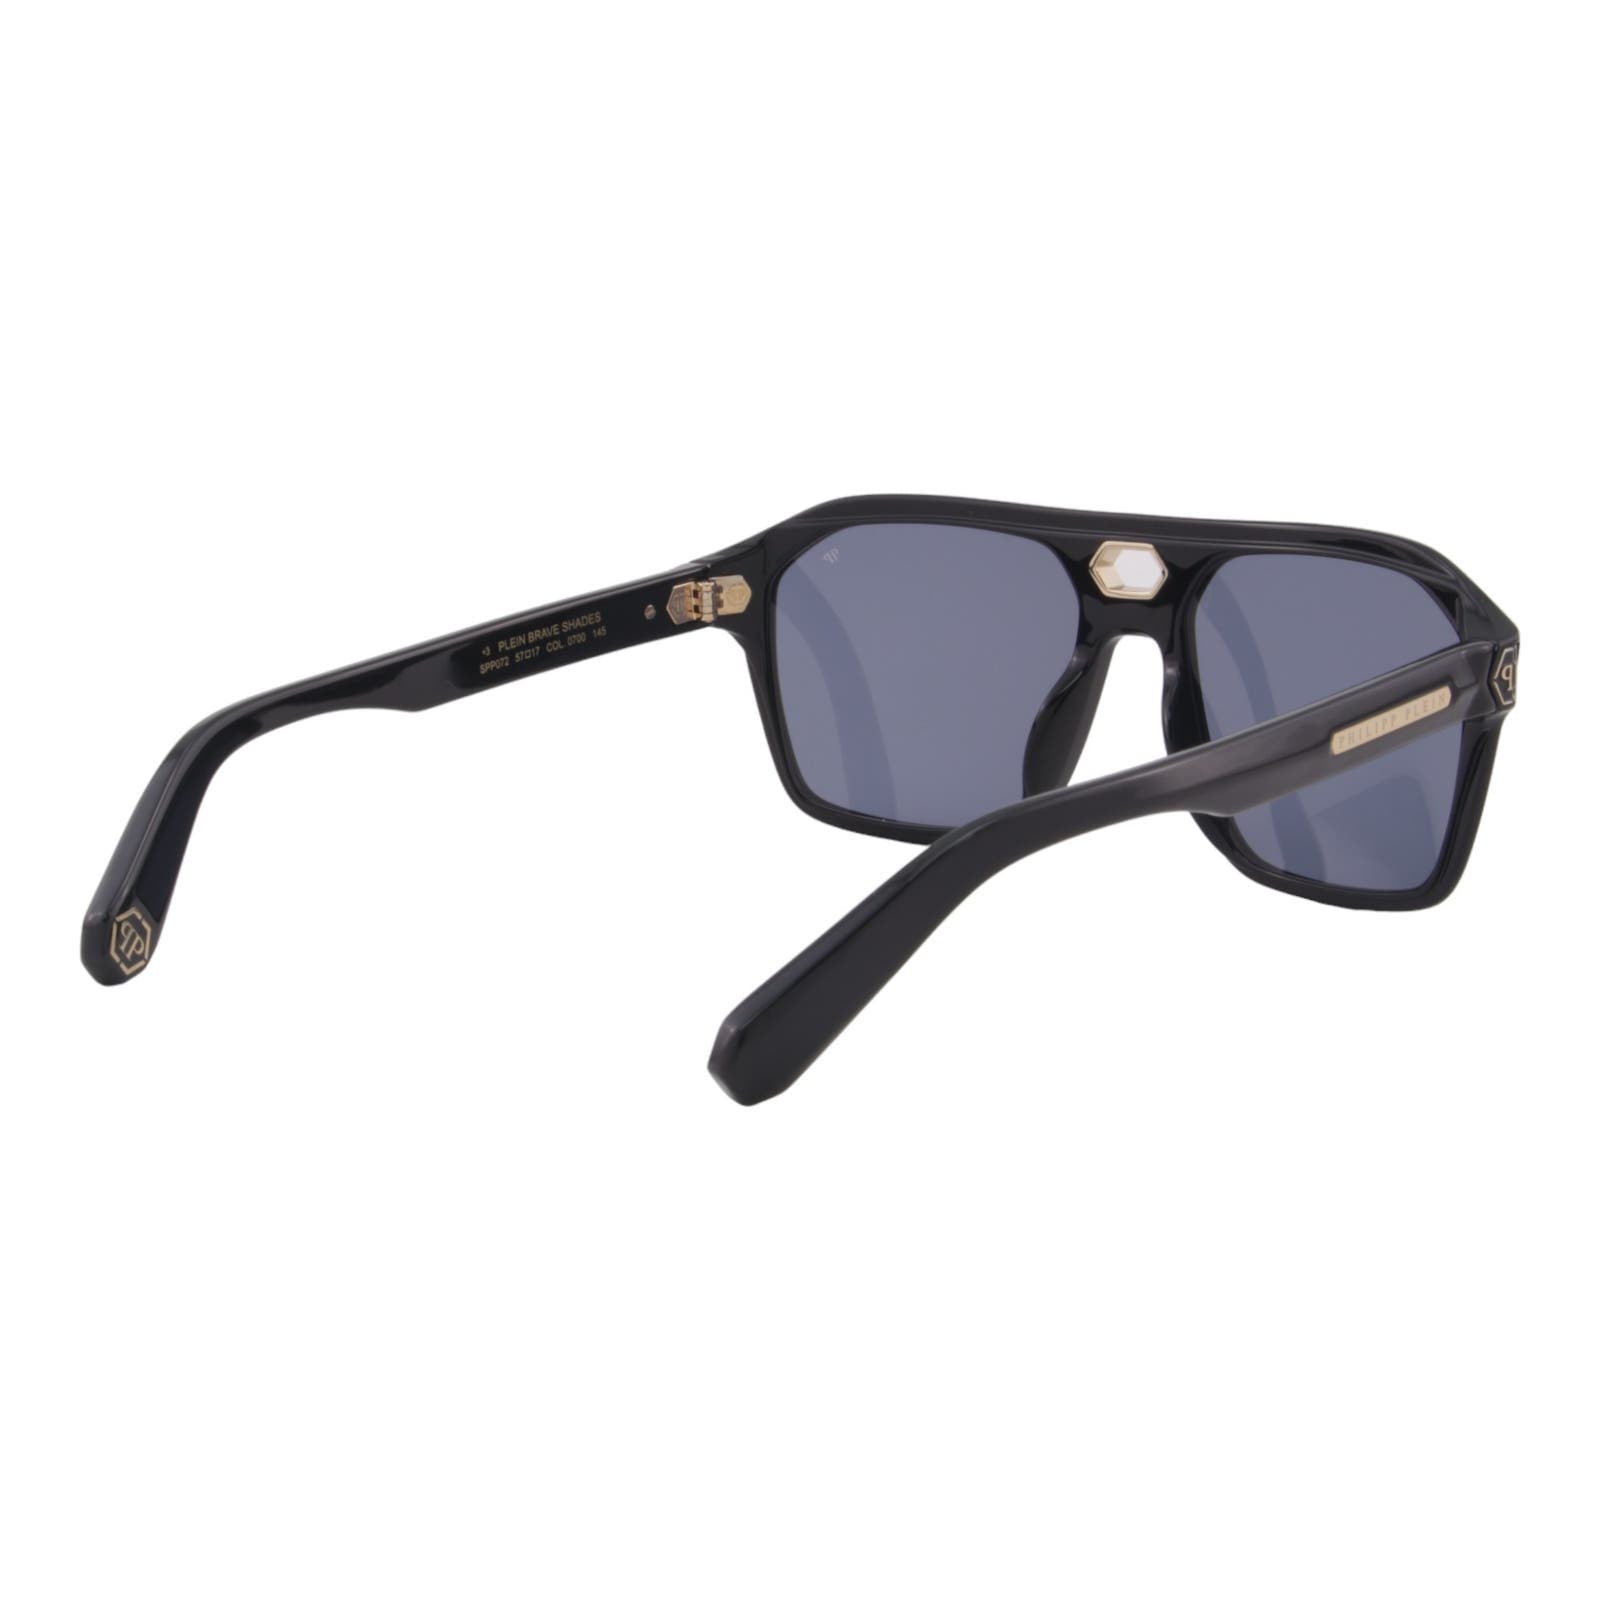 Men Designer Sunglasses SPP072M-0700 Black Square Frame Blue Lens